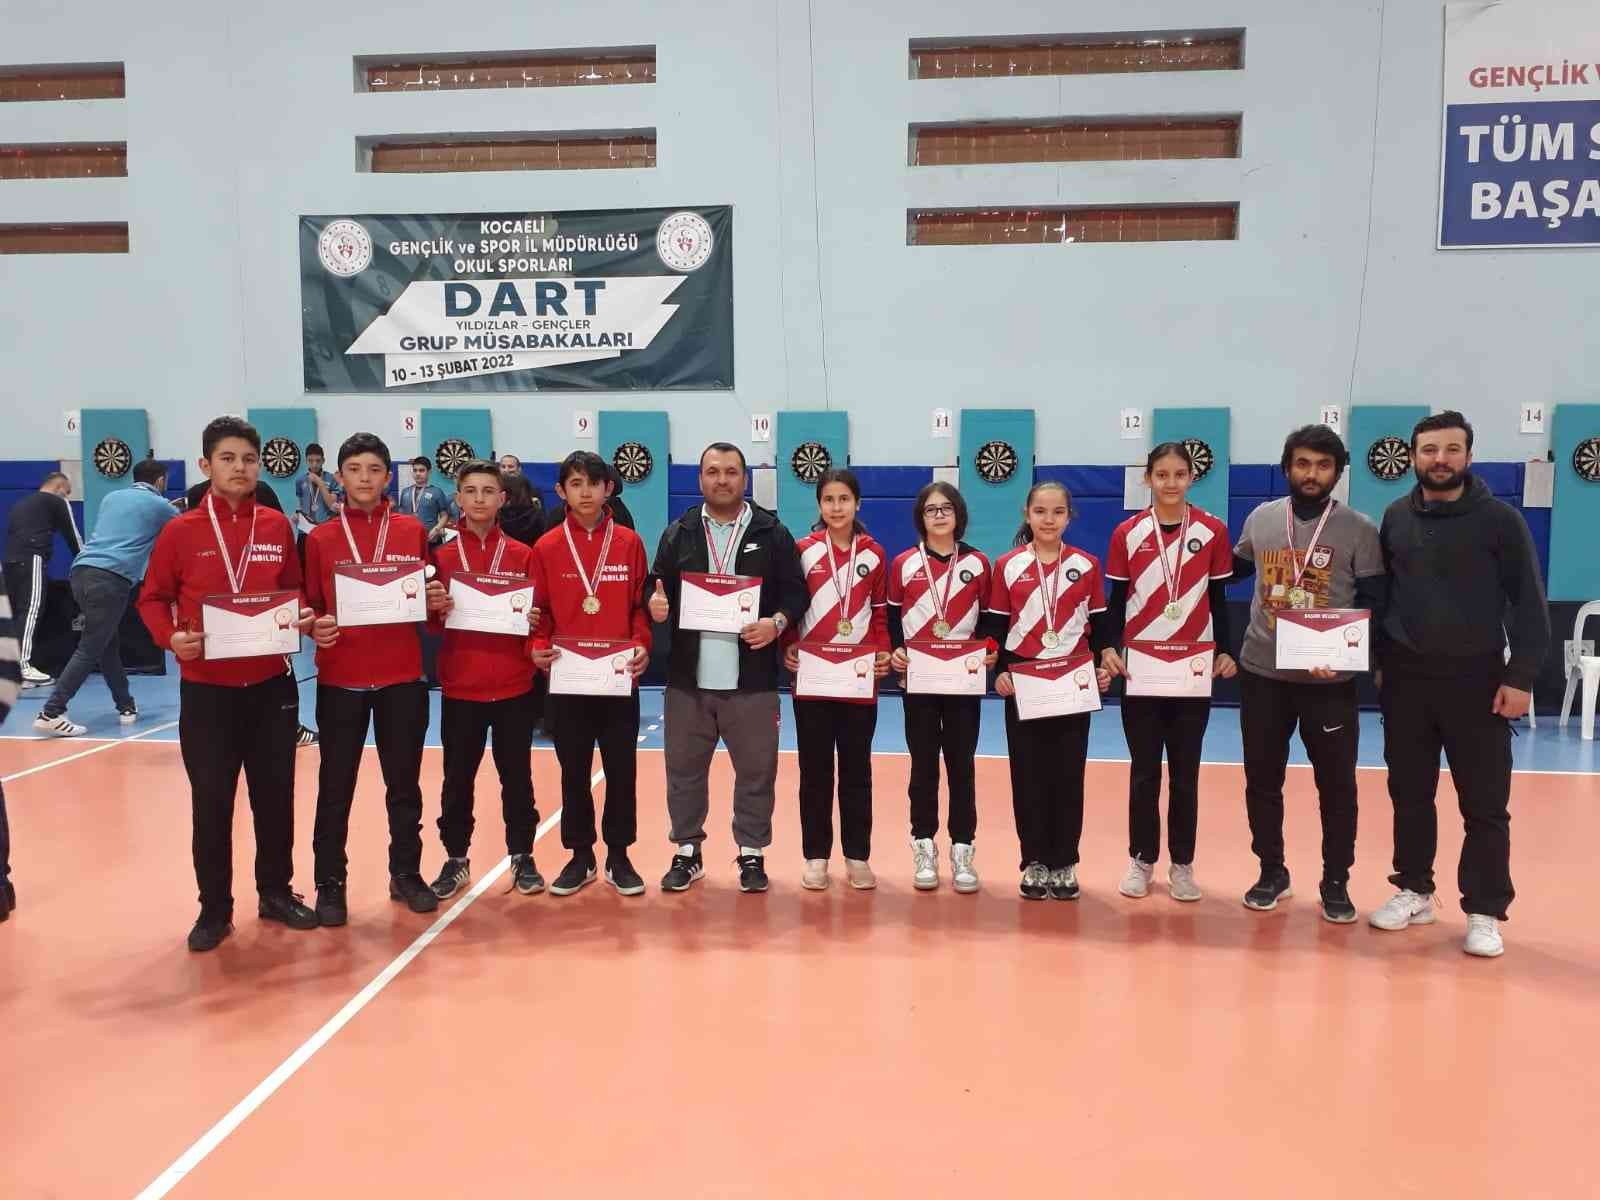 Denizli’den 7 okul takımı Türkiye şampiyonasına katılacak #denizli